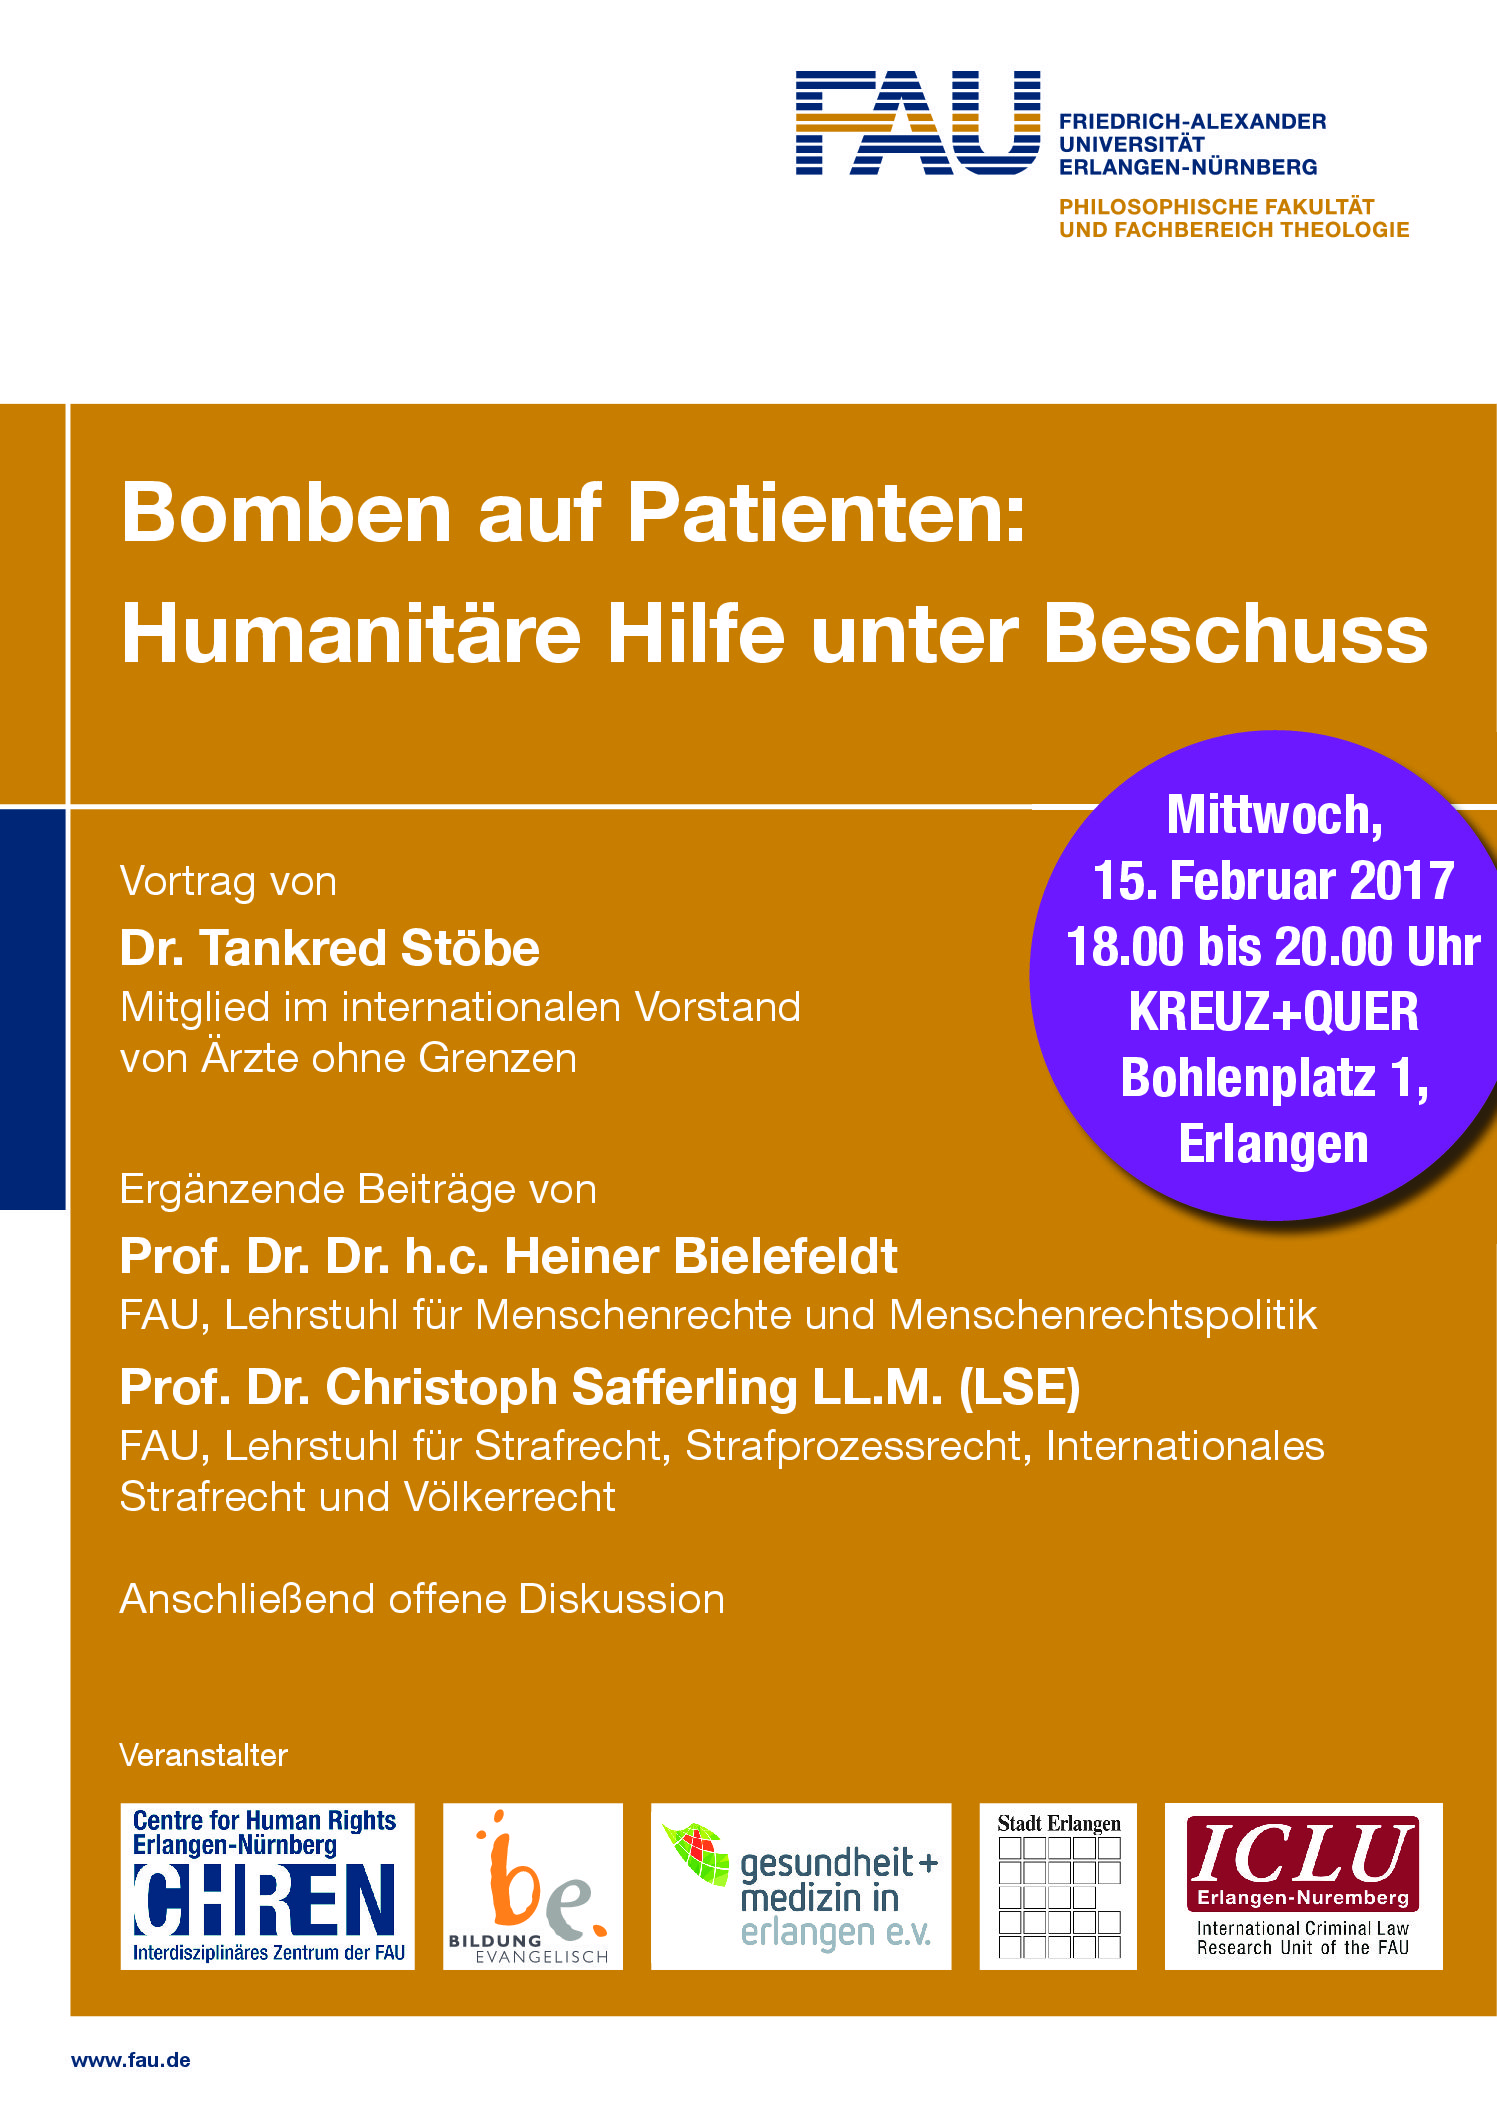 Zum Artikel "Bomben auf Patienten: Humanitäre Hilfe unter Beschuss"